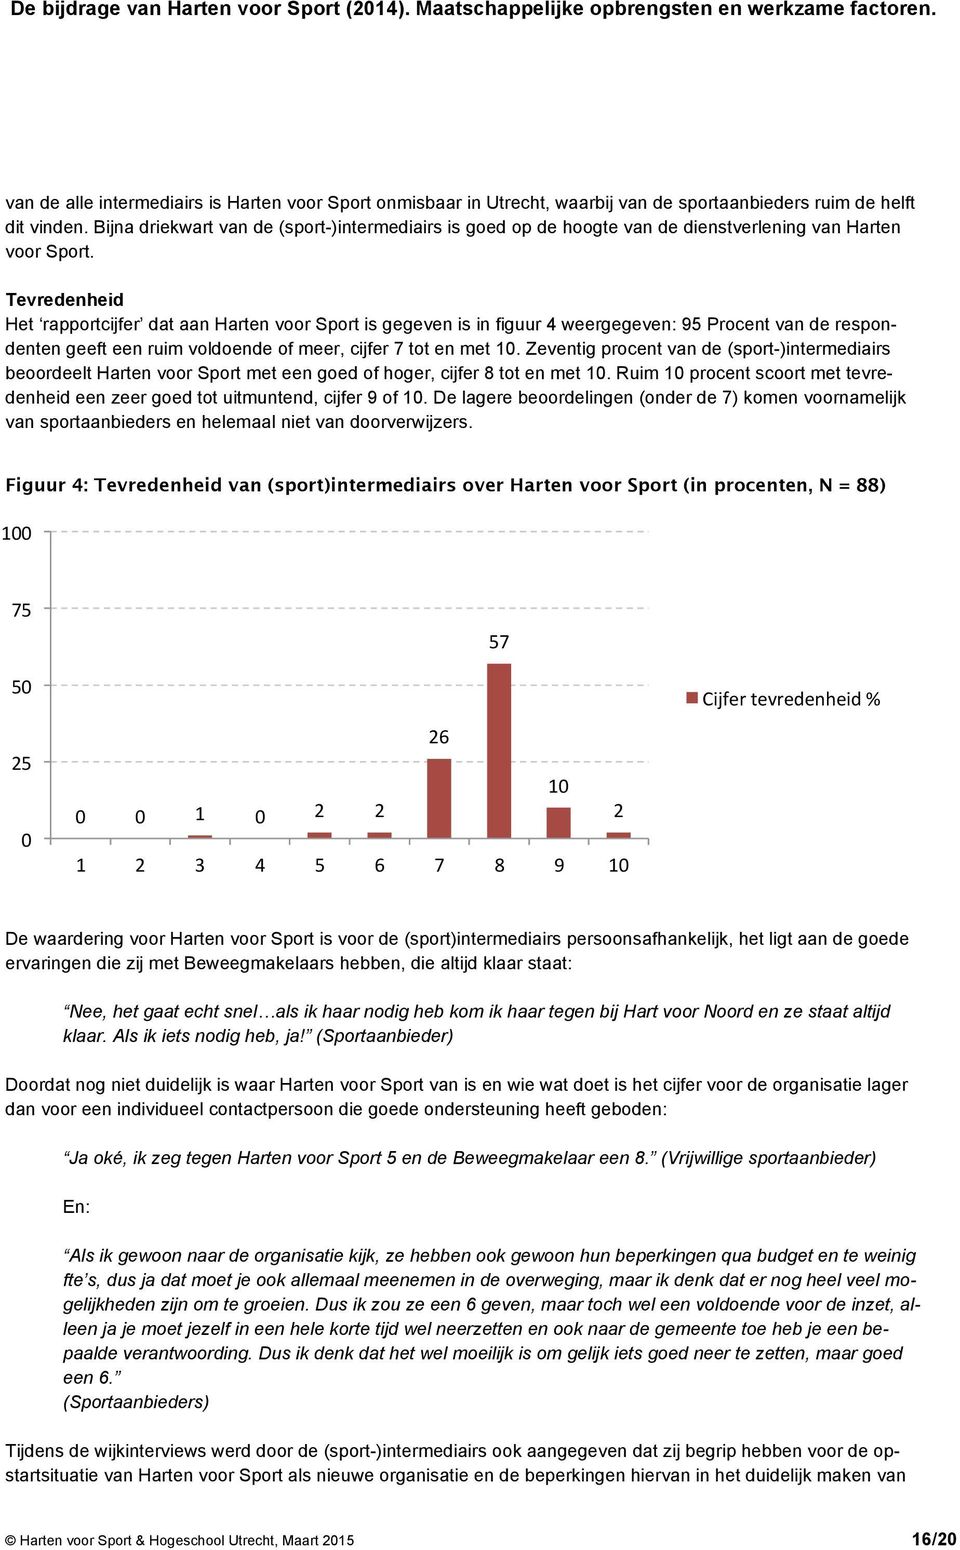 Tevredenheid Het rapportcijfer dat aan Harten voor Sport is gegeven is in figuur 4 weergegeven: 95 Procent van de respondenten geeft een ruim voldoende of meer, cijfer 7 tot en met 10.